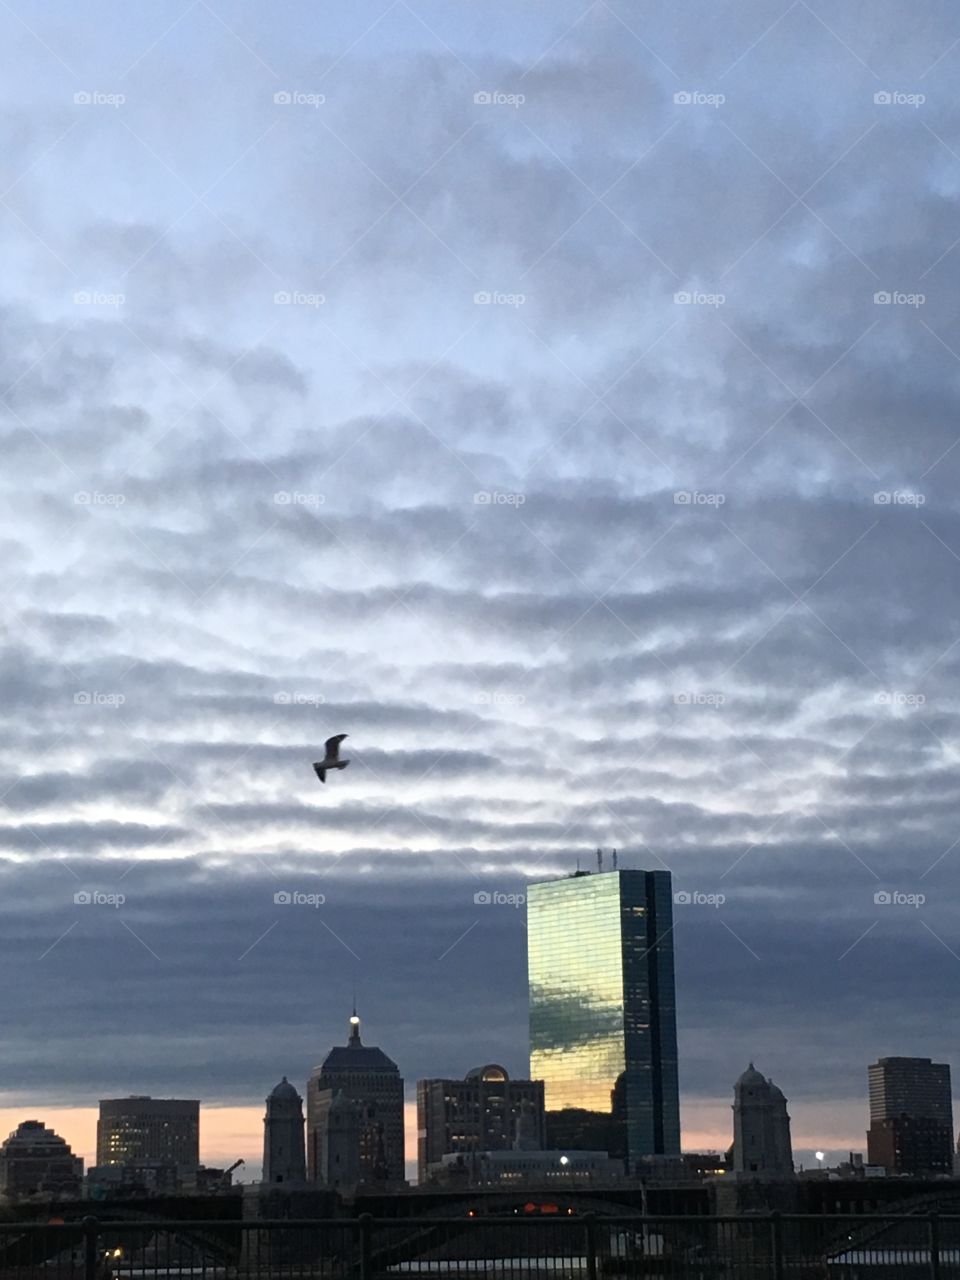 Good Morning Boston!